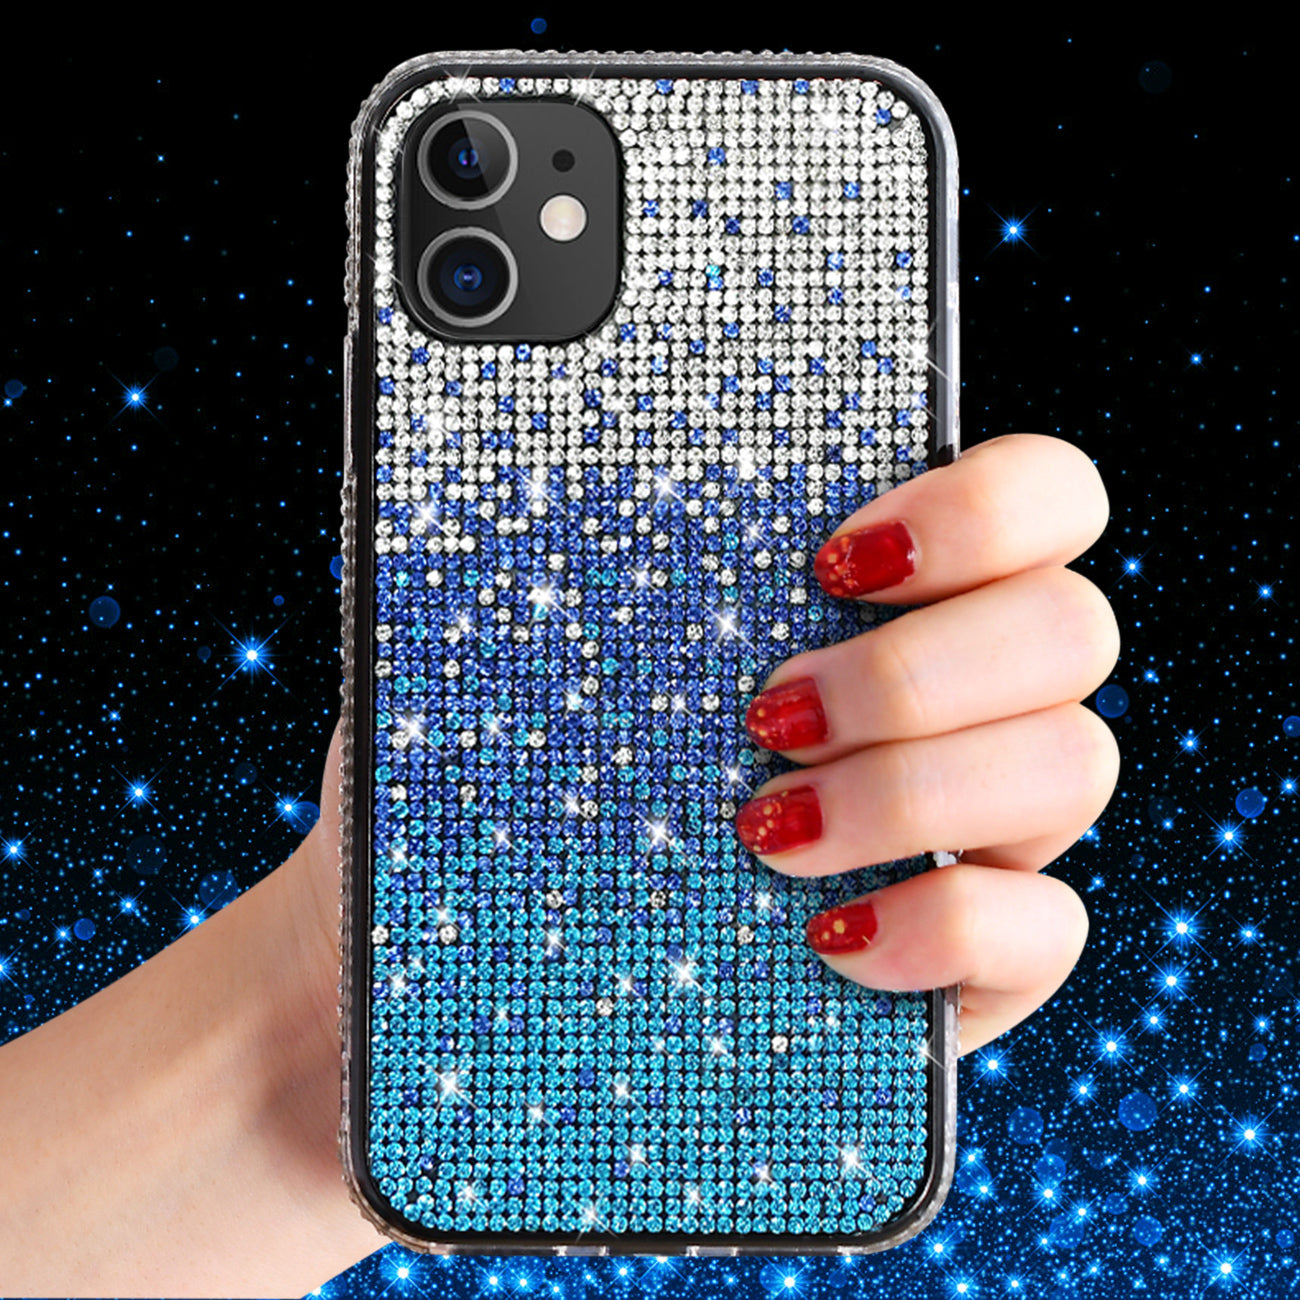 Case Diamond Design Apple iPhone XR Blue Color